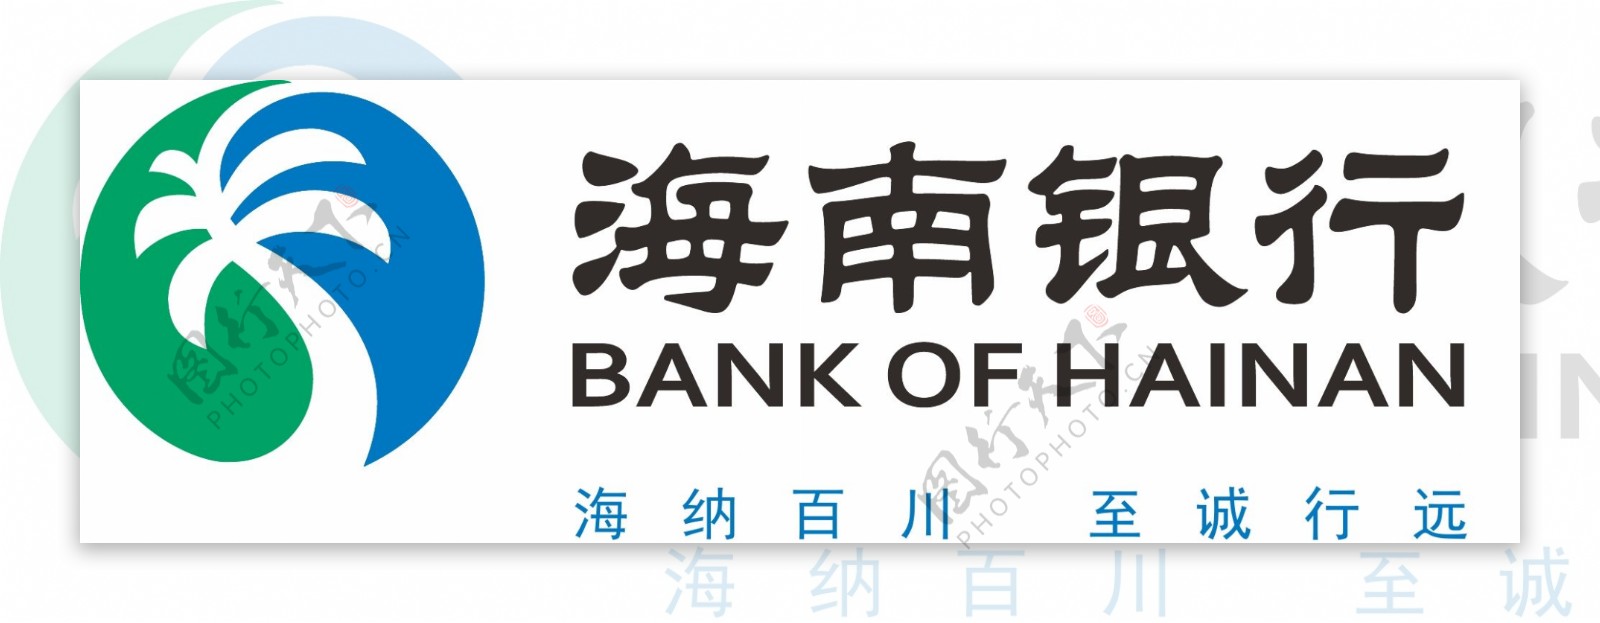 海南银行logo